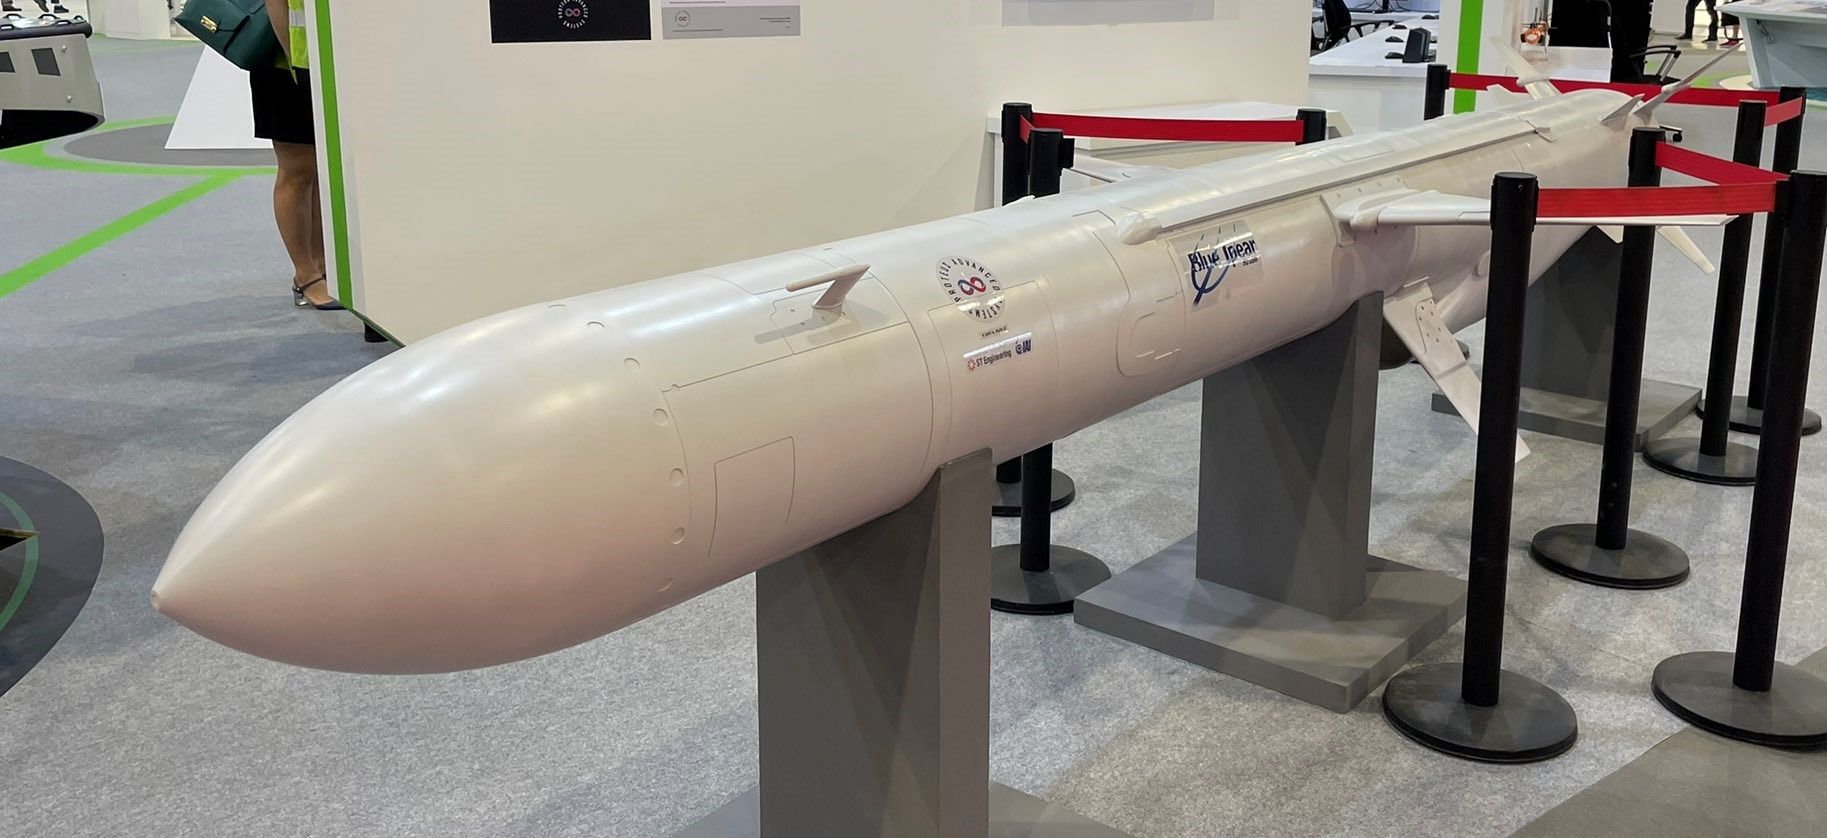 IAI Presented Anti-Ship Missile Blue Spear